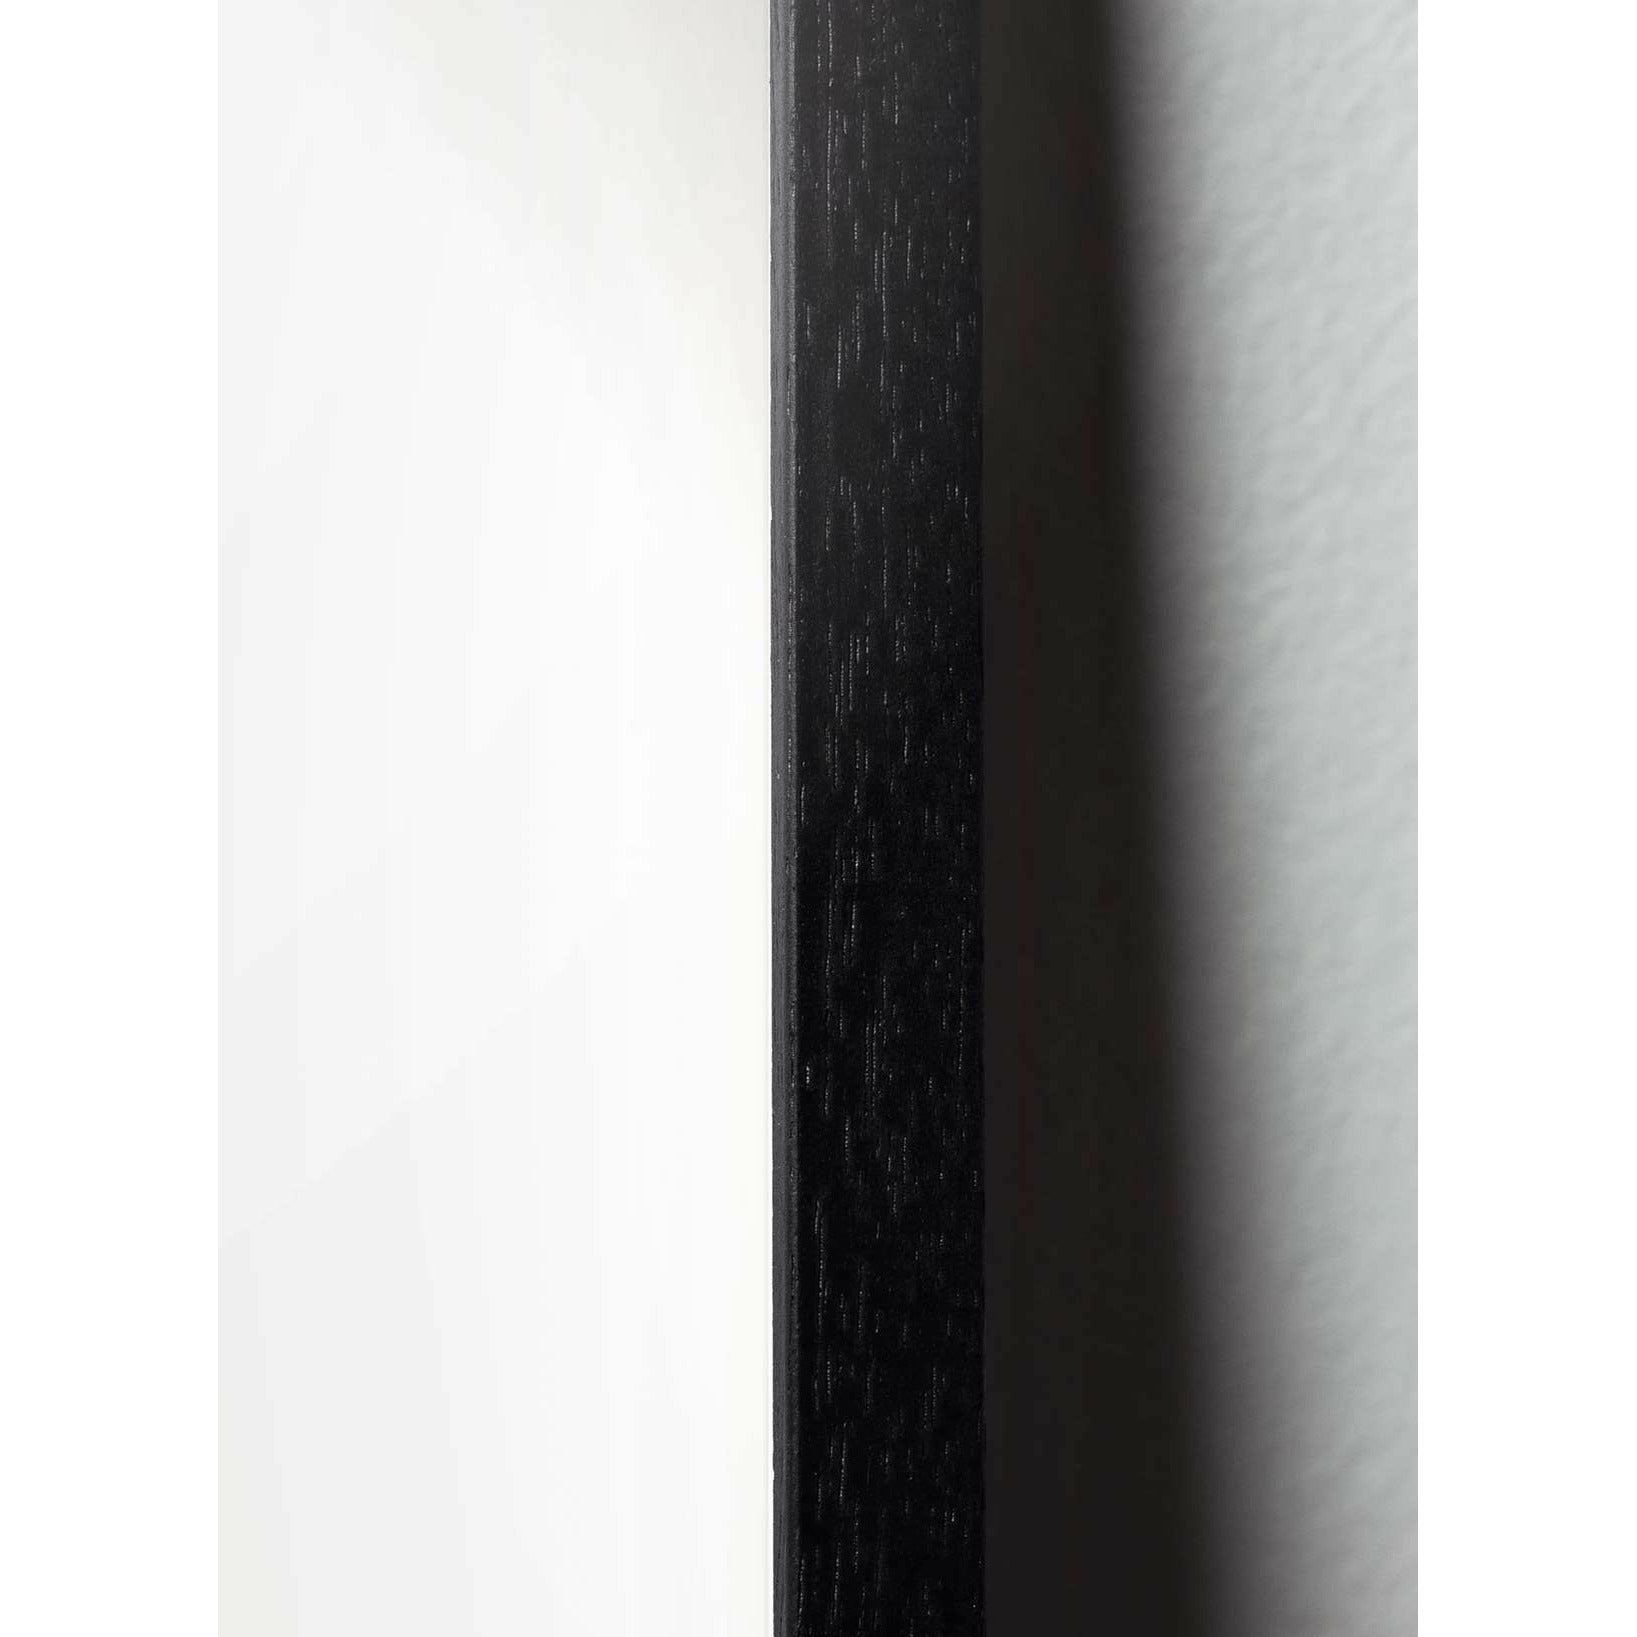 Pomysły plakat klipu na papierze łabędzia, rama w czarnym lakierowanym drewnie 30x40 cm, różowe tło